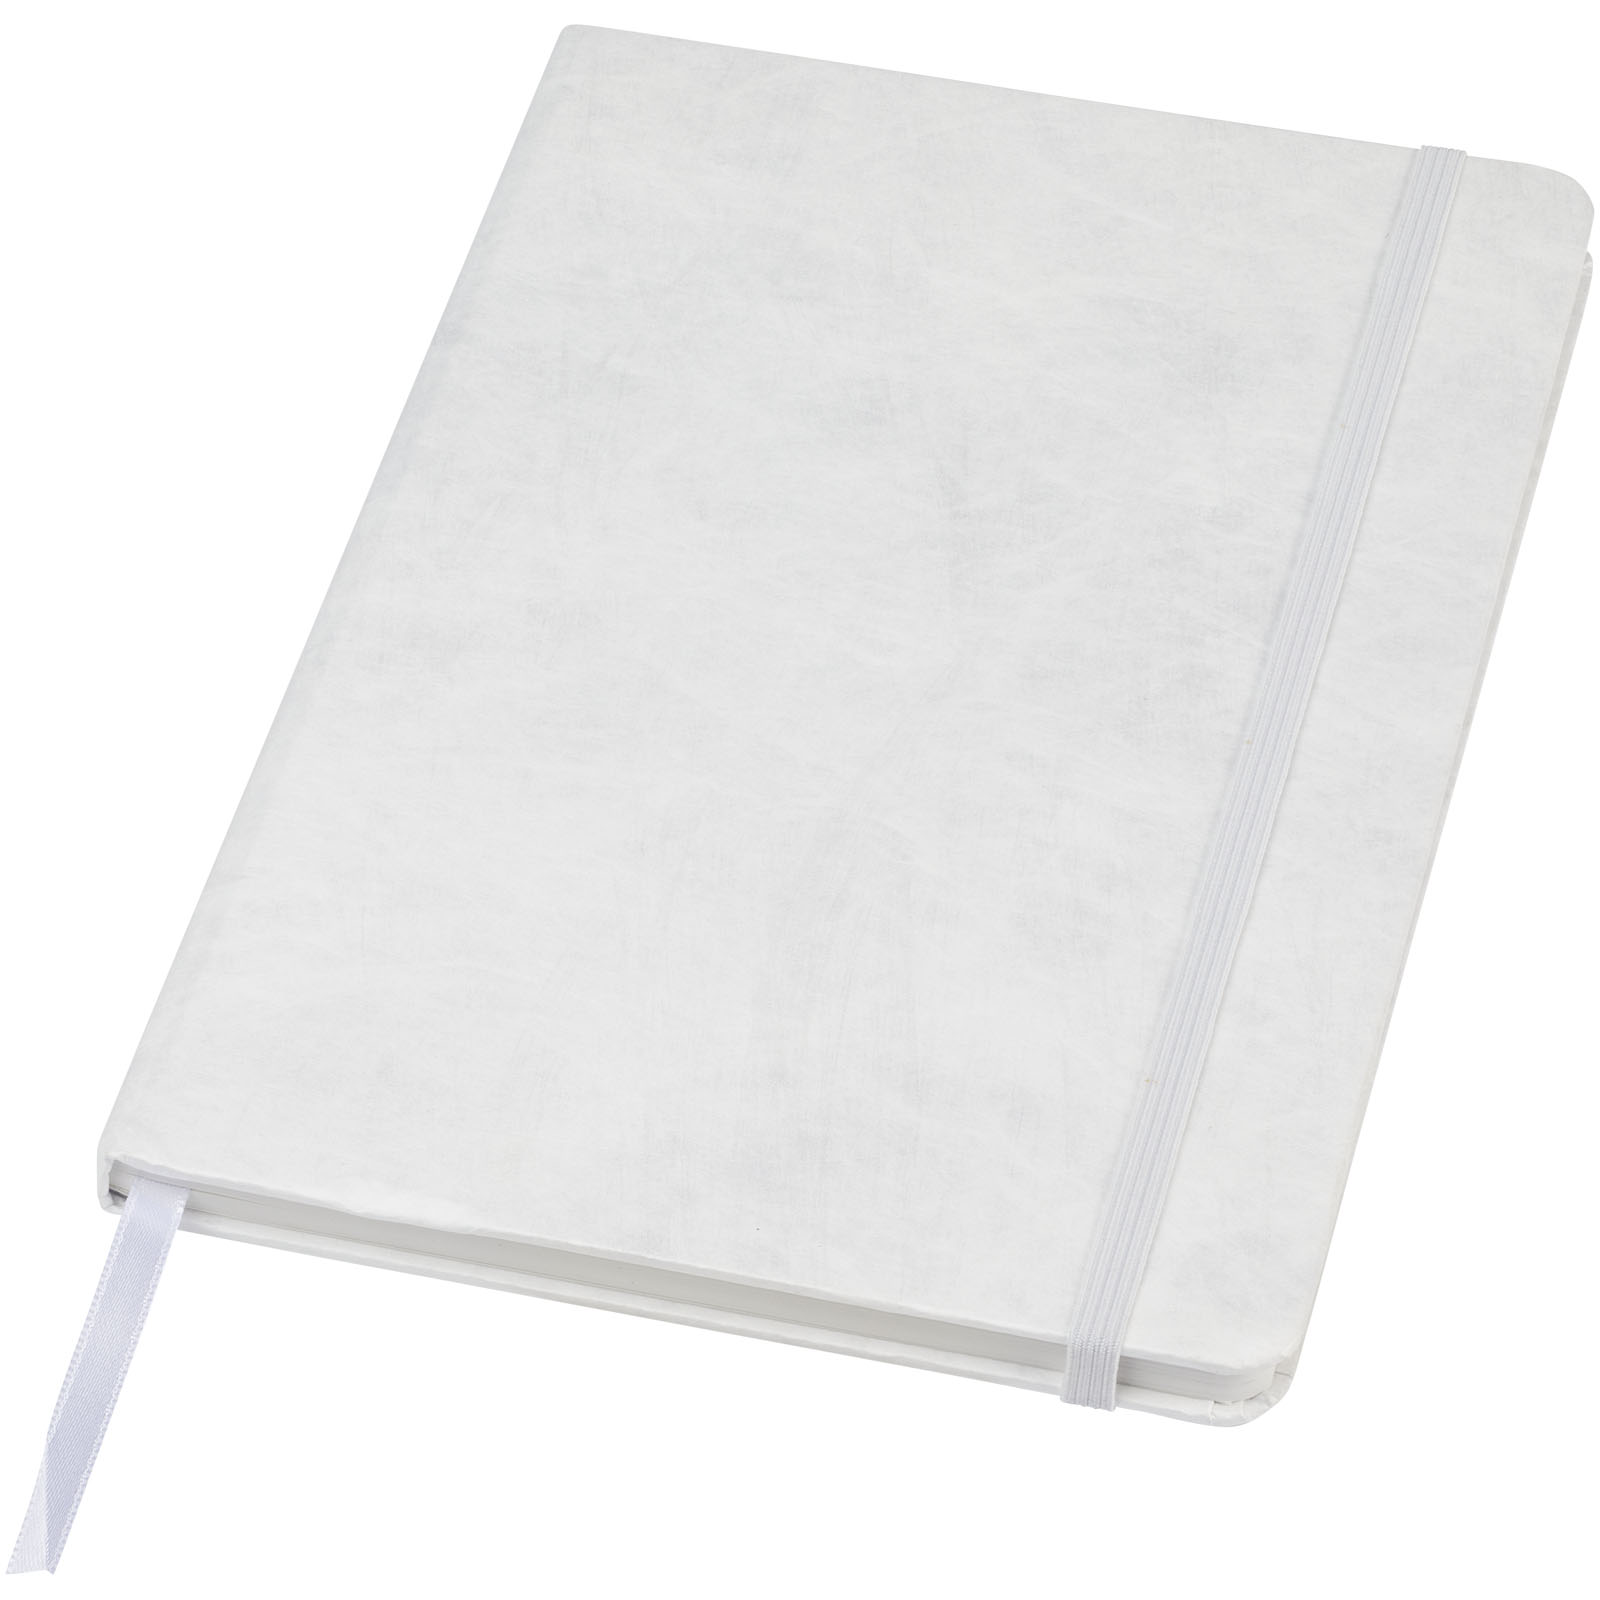 Notebooks & Desk Essentials - Breccia A5 stone paper notebook